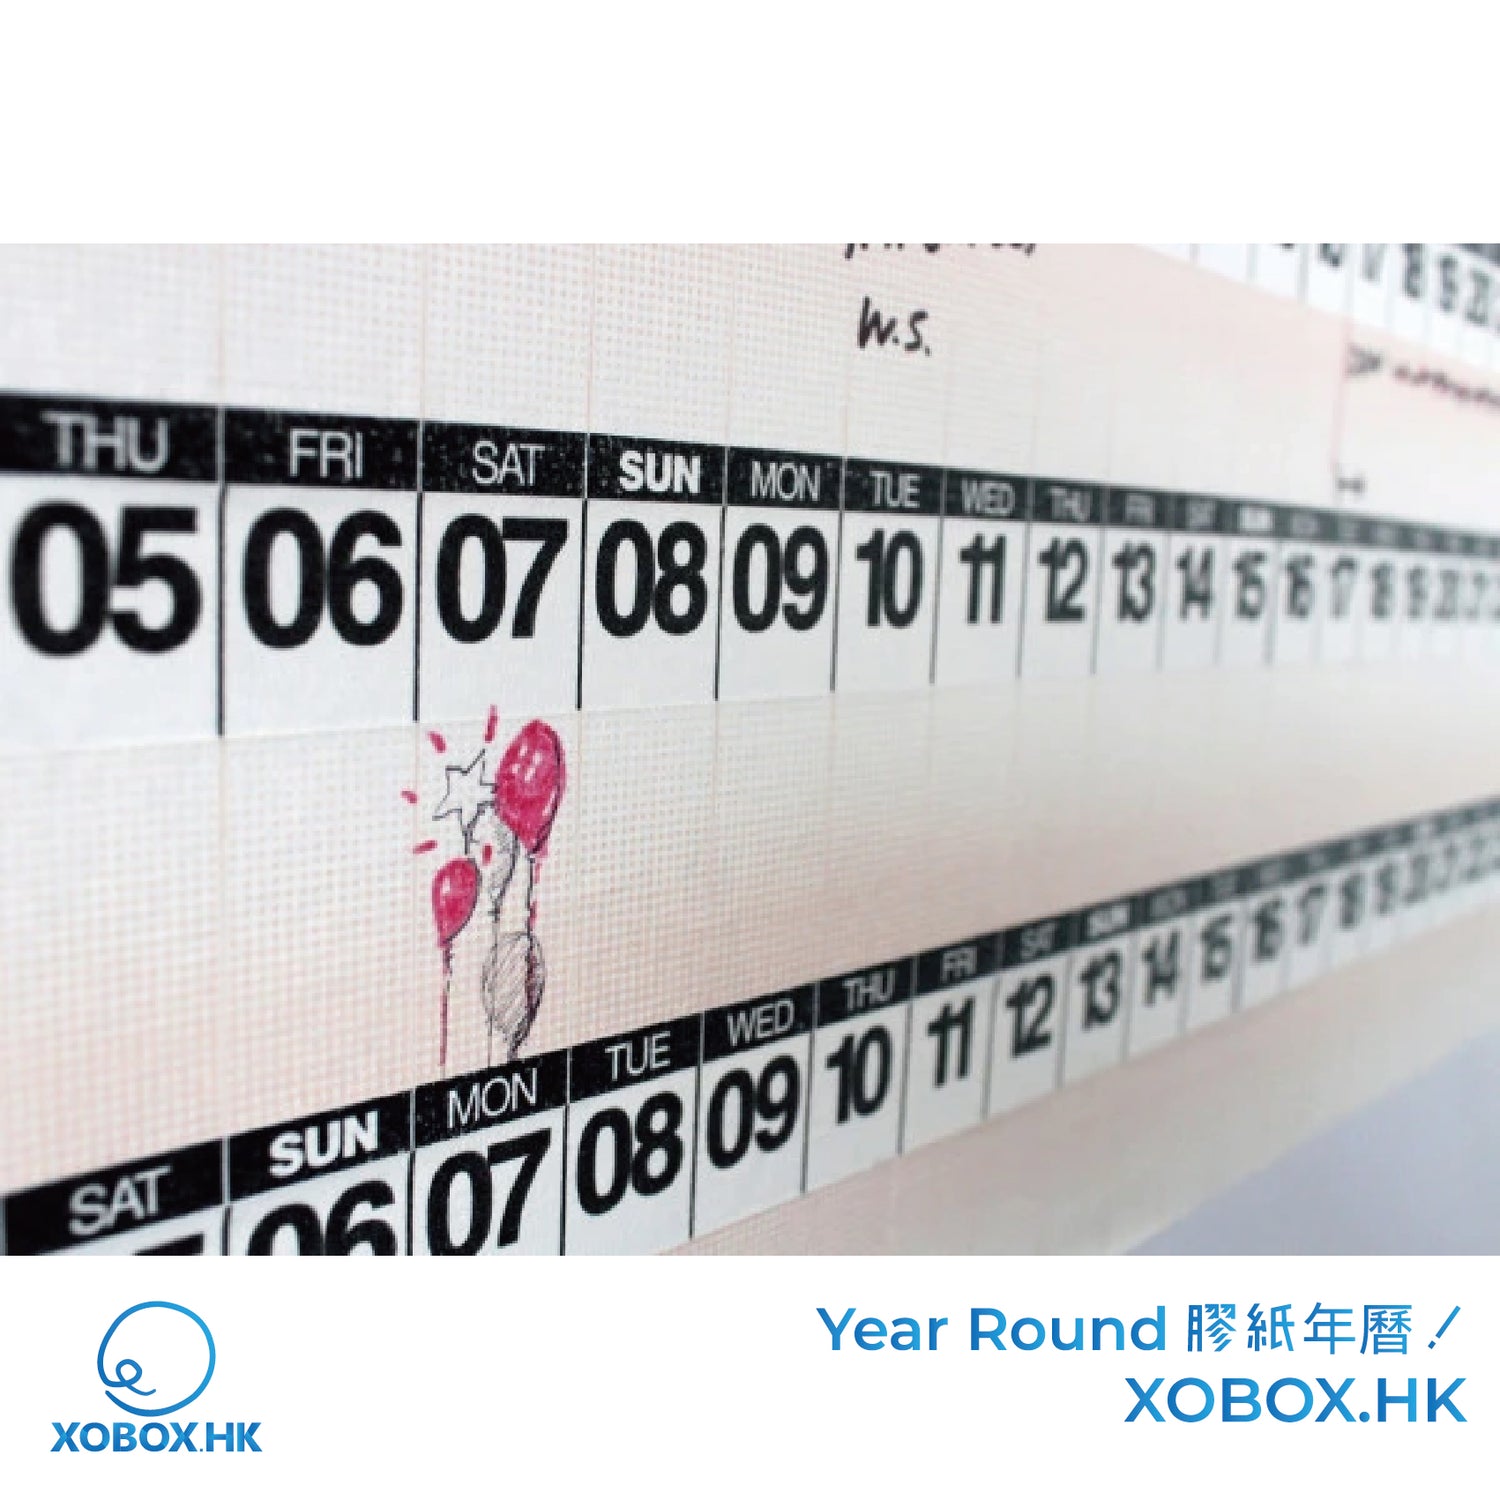 紙膠帶果然最棒了！Year Round 讓你客製自己的年曆 | XOBOX.HK